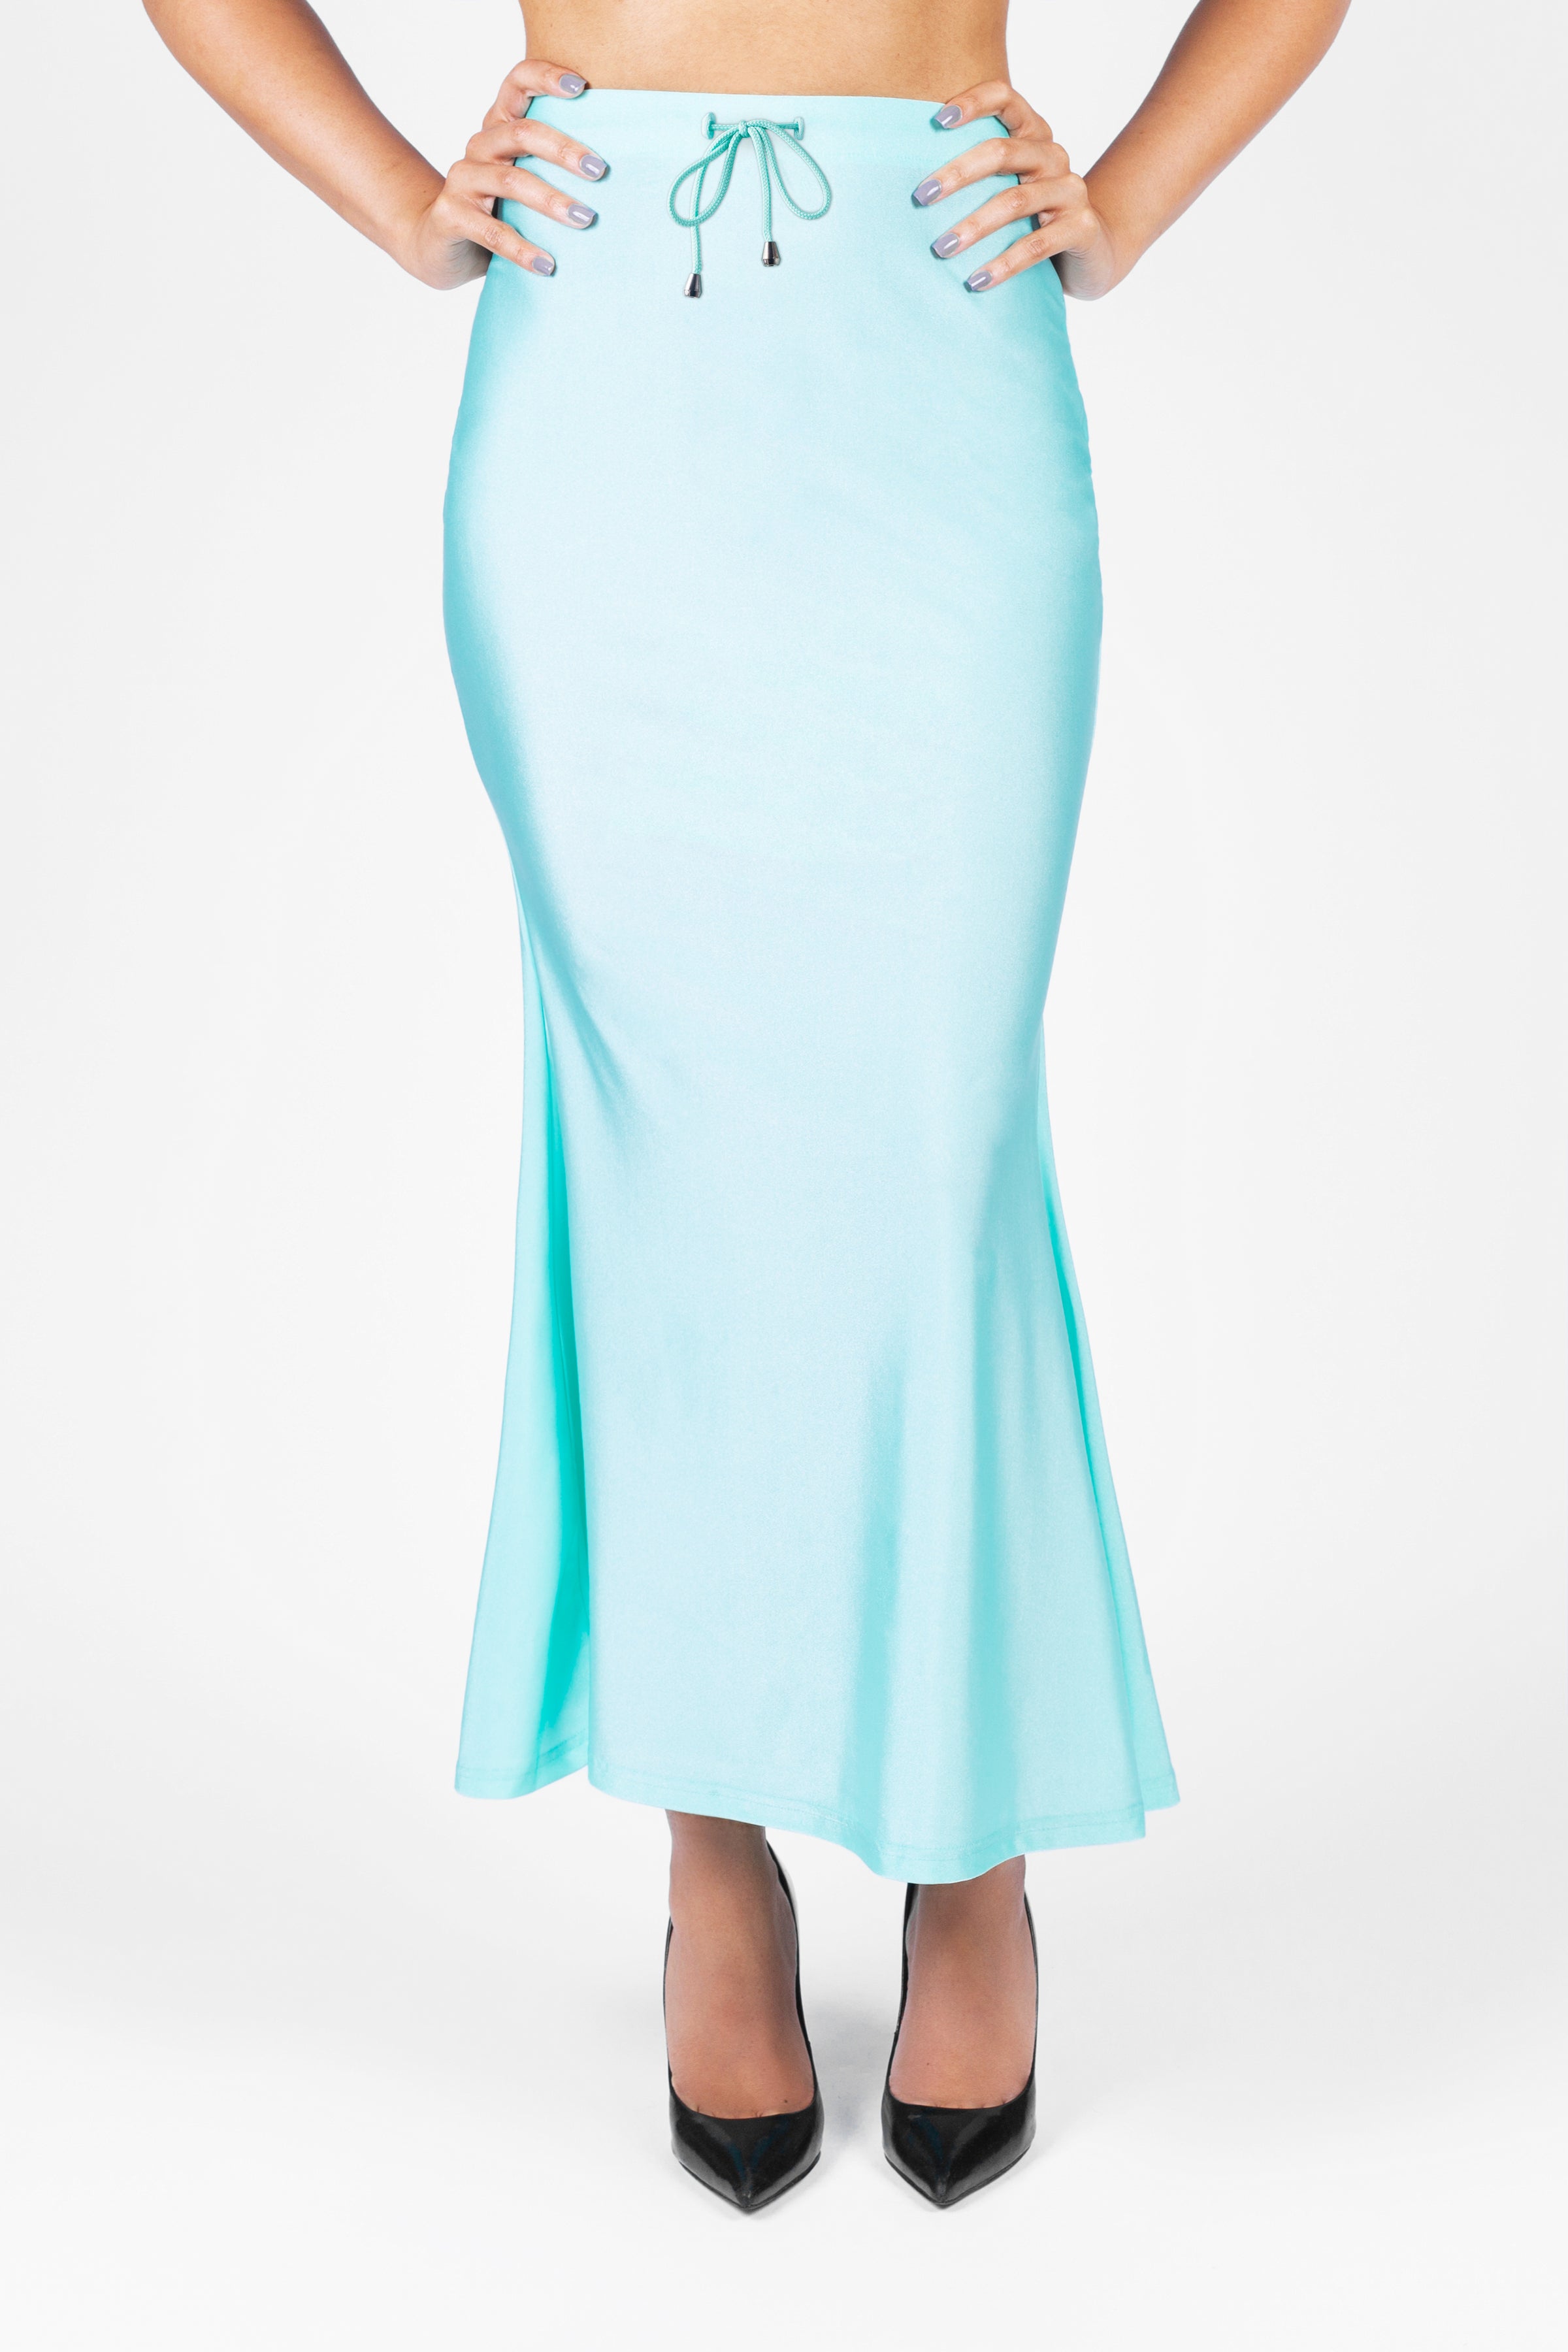 BLUE SAREE SHAPEWEAR Women's Stretchable Skirt Petticoat Lehanga Fabric  Craft Mermaid Skirt Sari Skirt Elasticated Petticoat Party Wear -   Ireland